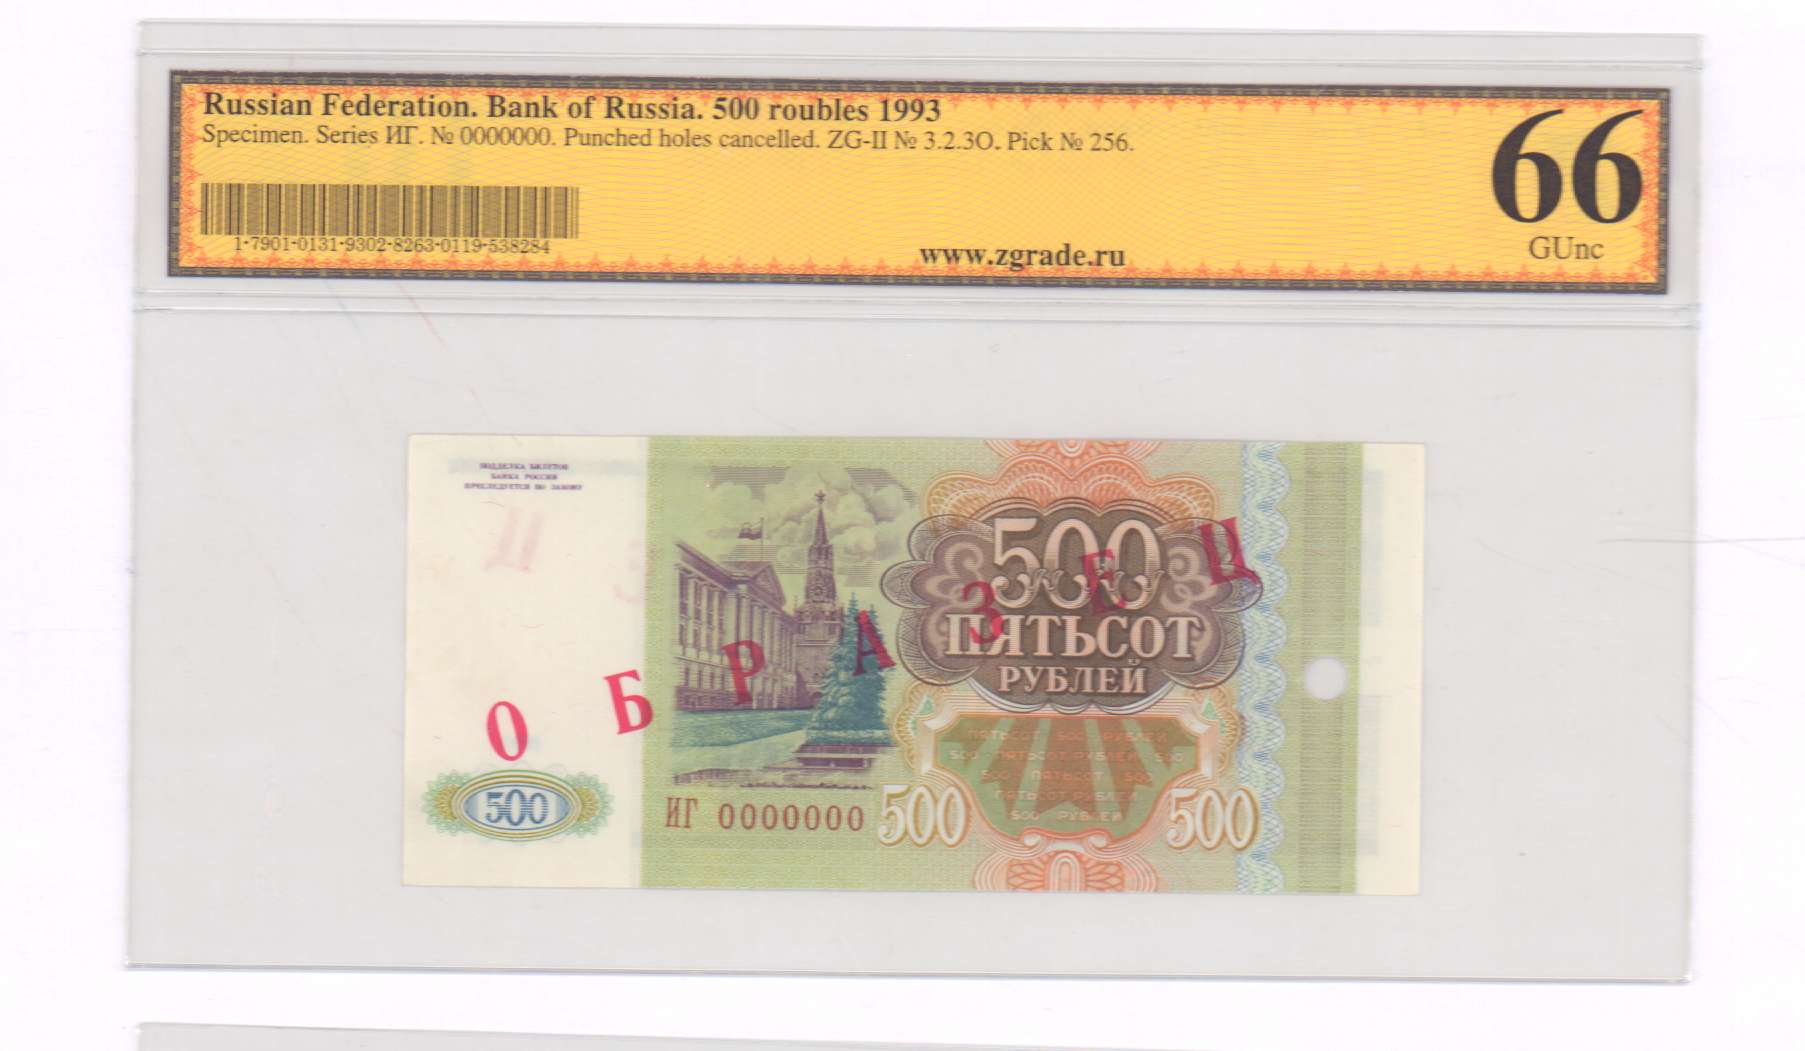 500 рублей 1993 цена. Банкноты банка России 1993. Размер купюры 500 рублей в см.